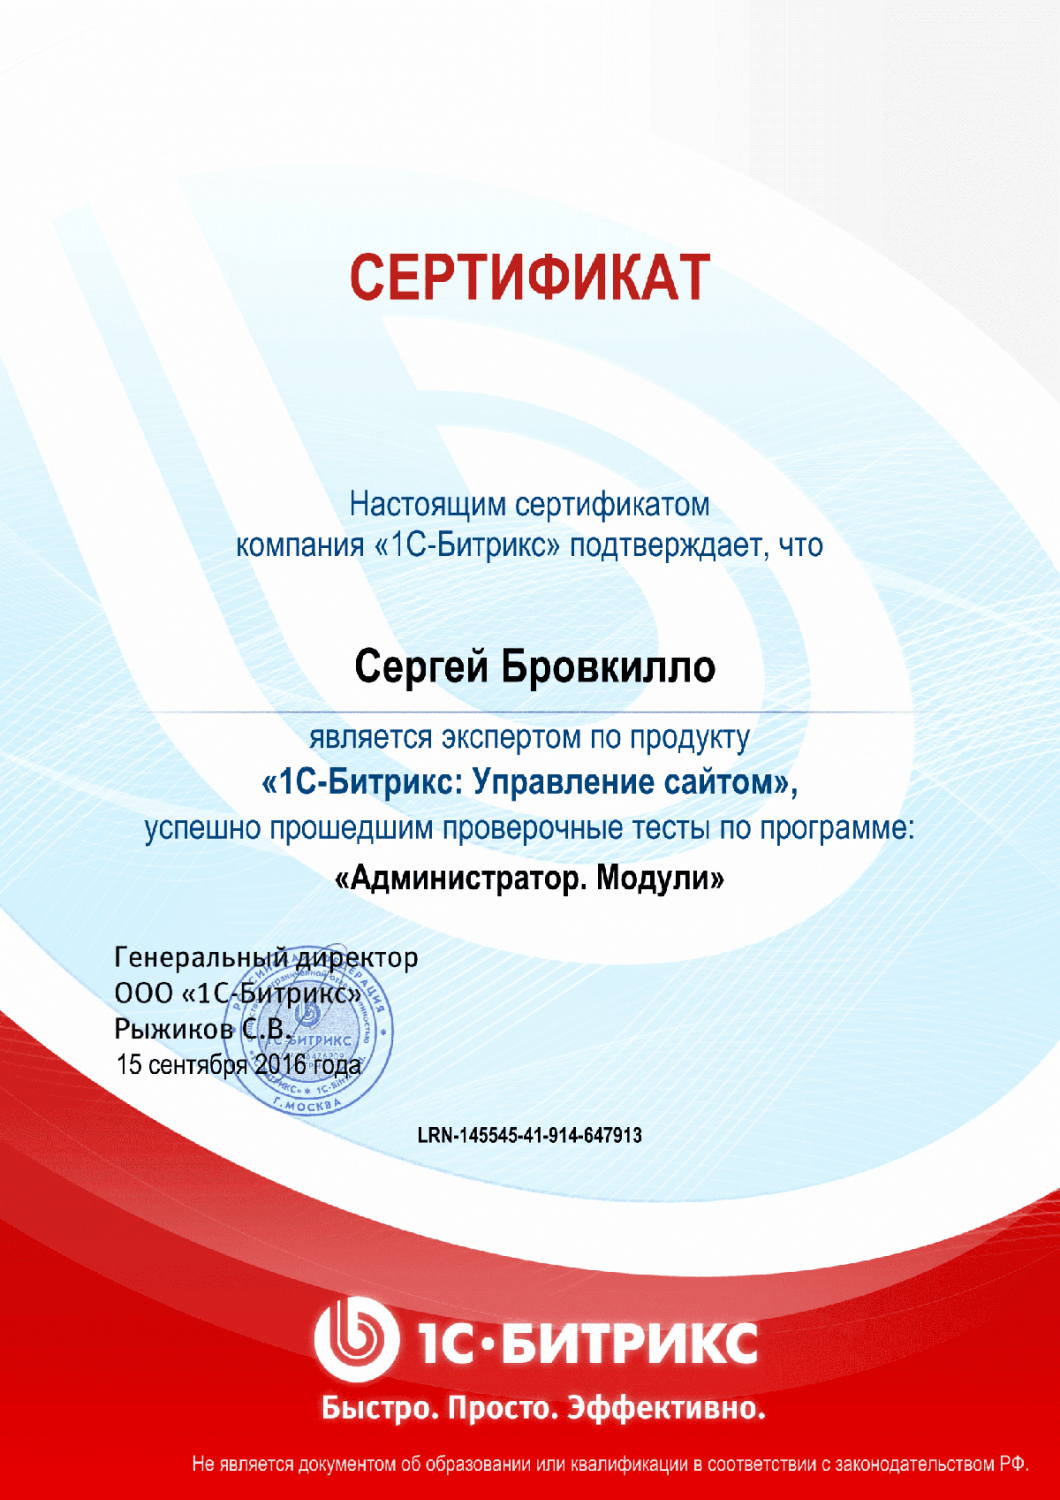 Сертификат эксперта по программе "Администратор. Модули" в Владивостока